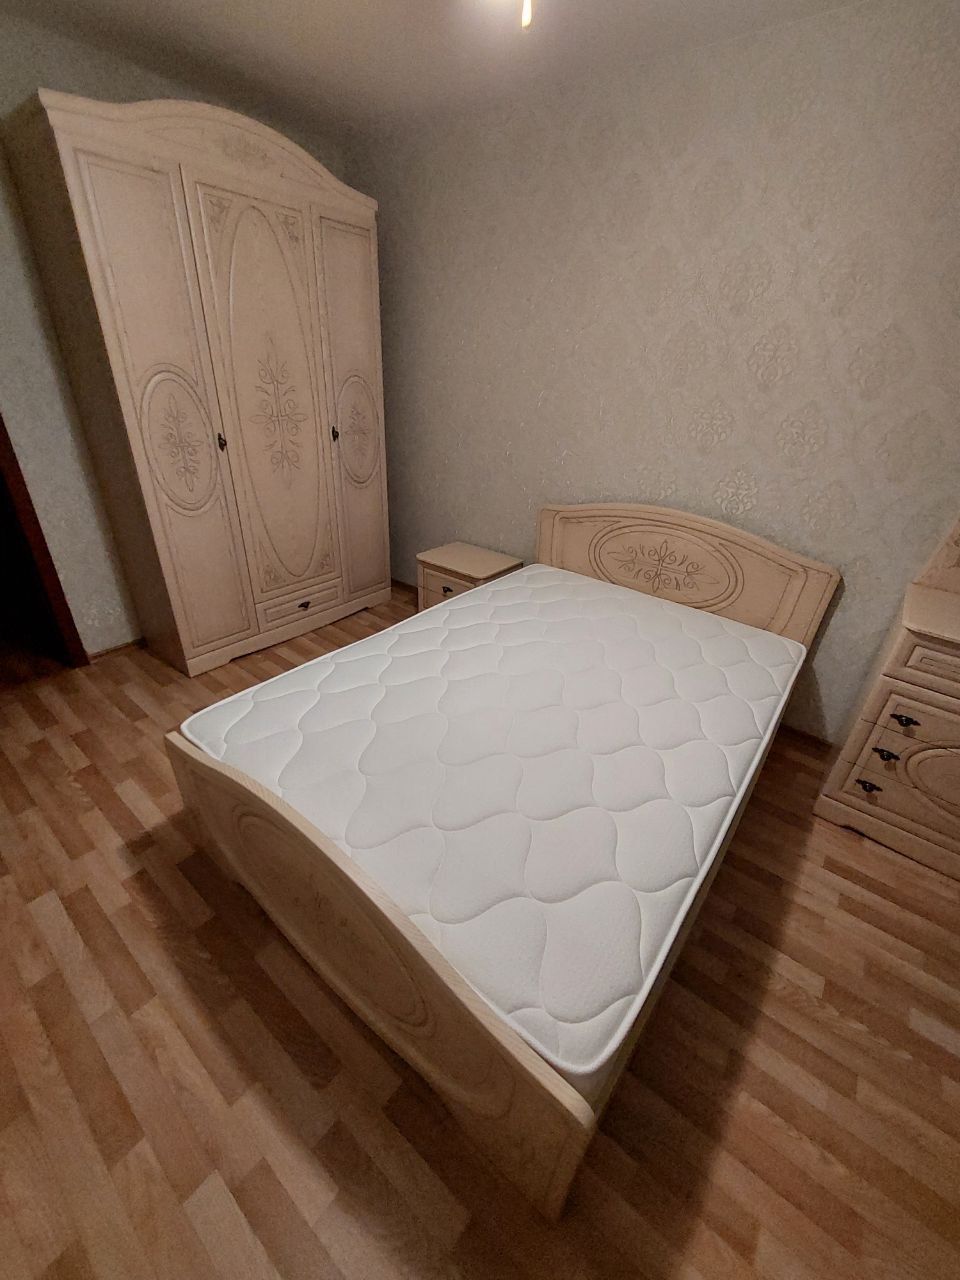 Полутораспальная кровать "Натали" 120 х 190 с подъемным мех-ом цвет клен/ясень беж-й изножье высокое